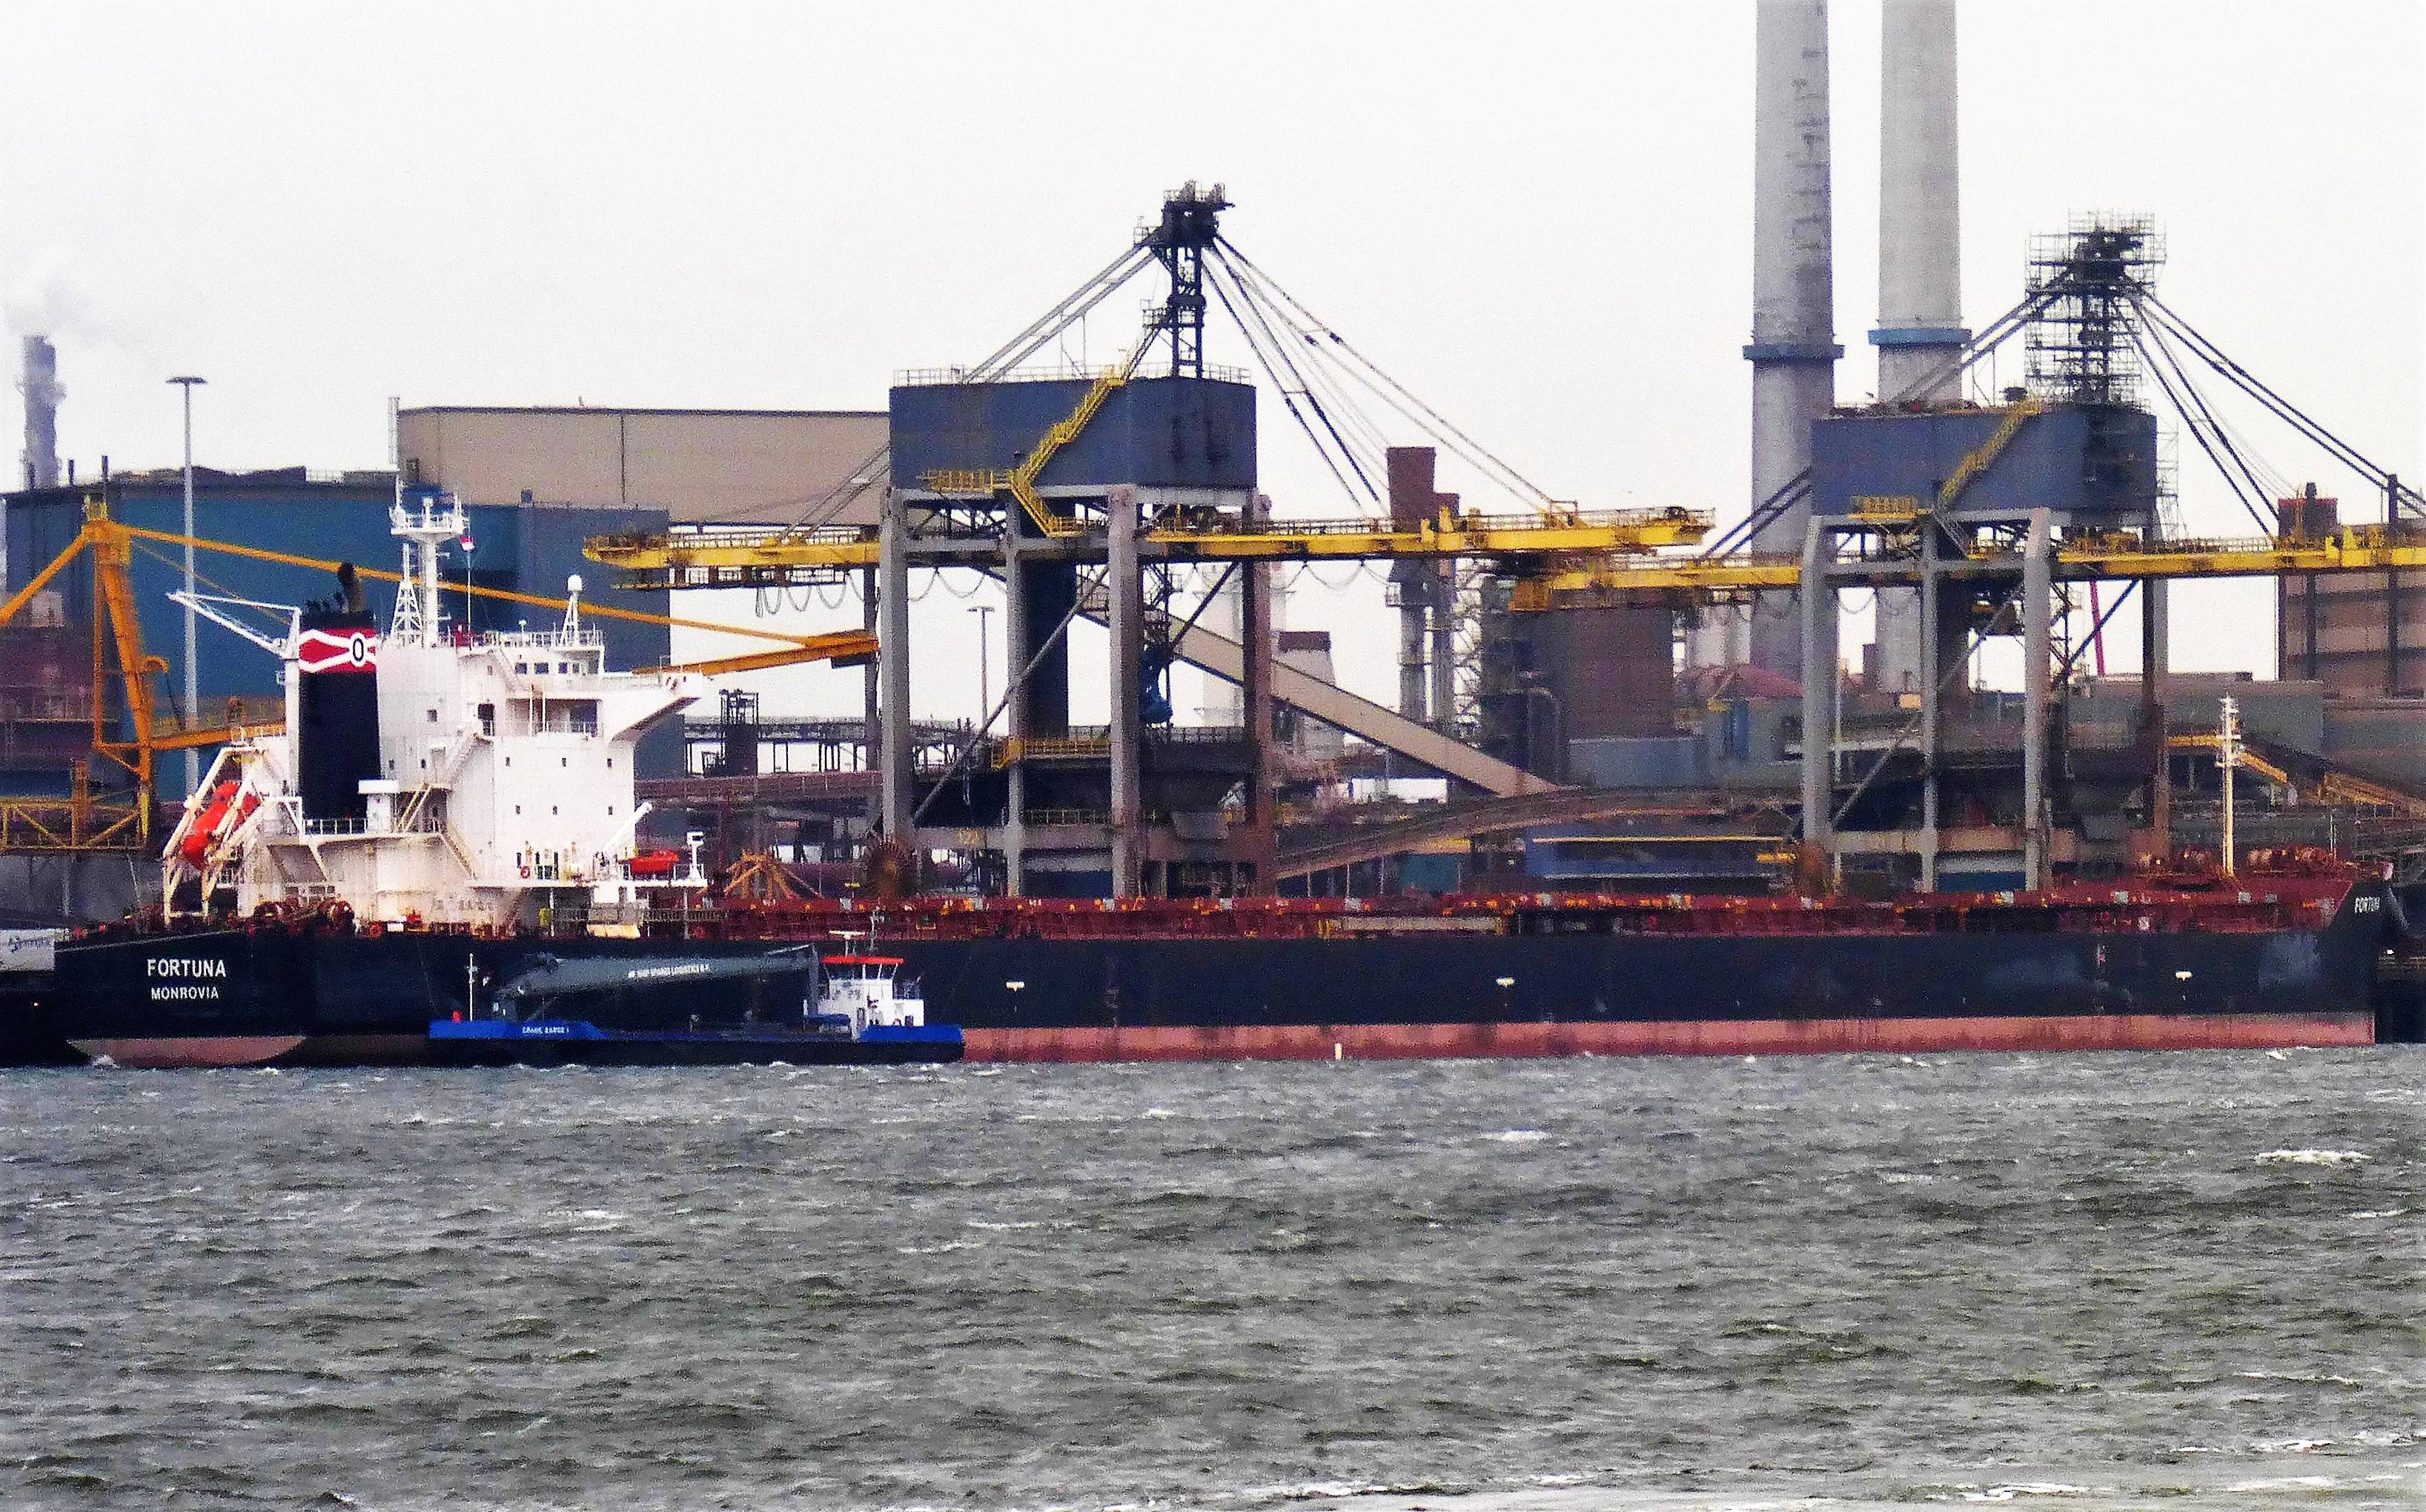 FORTUNA (bulkcarrier) 